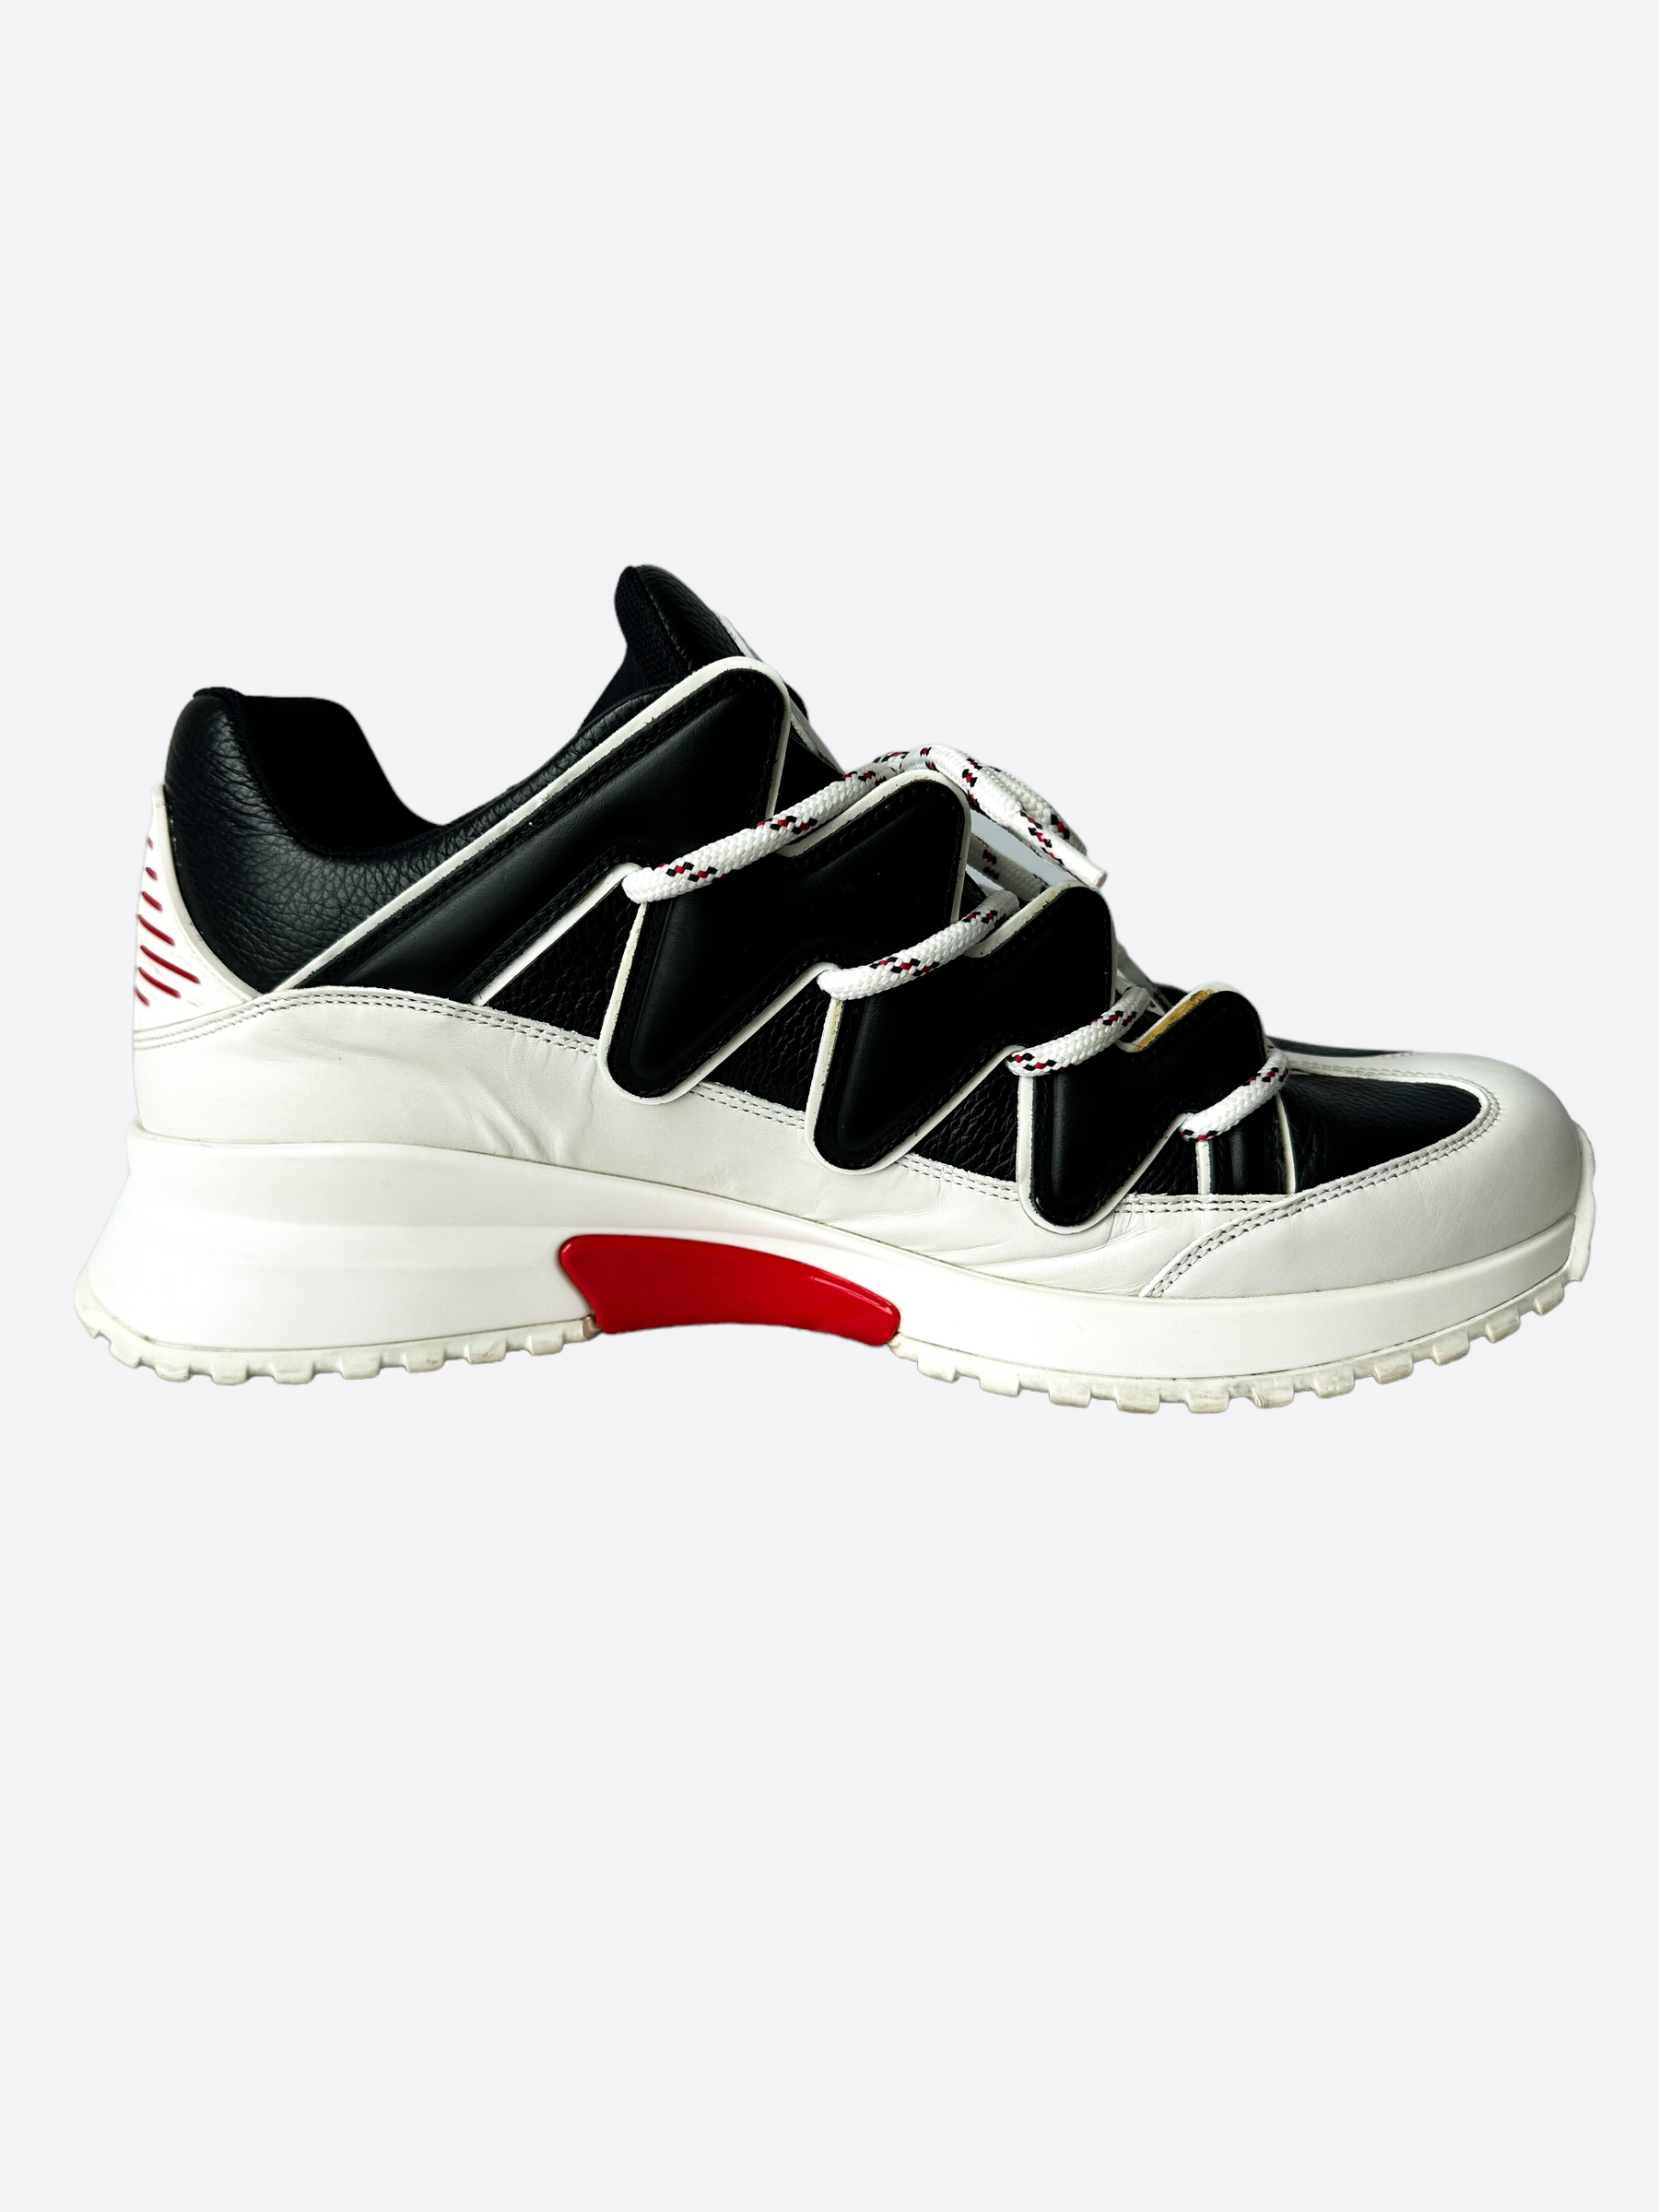 louis-vuitton sneakers white